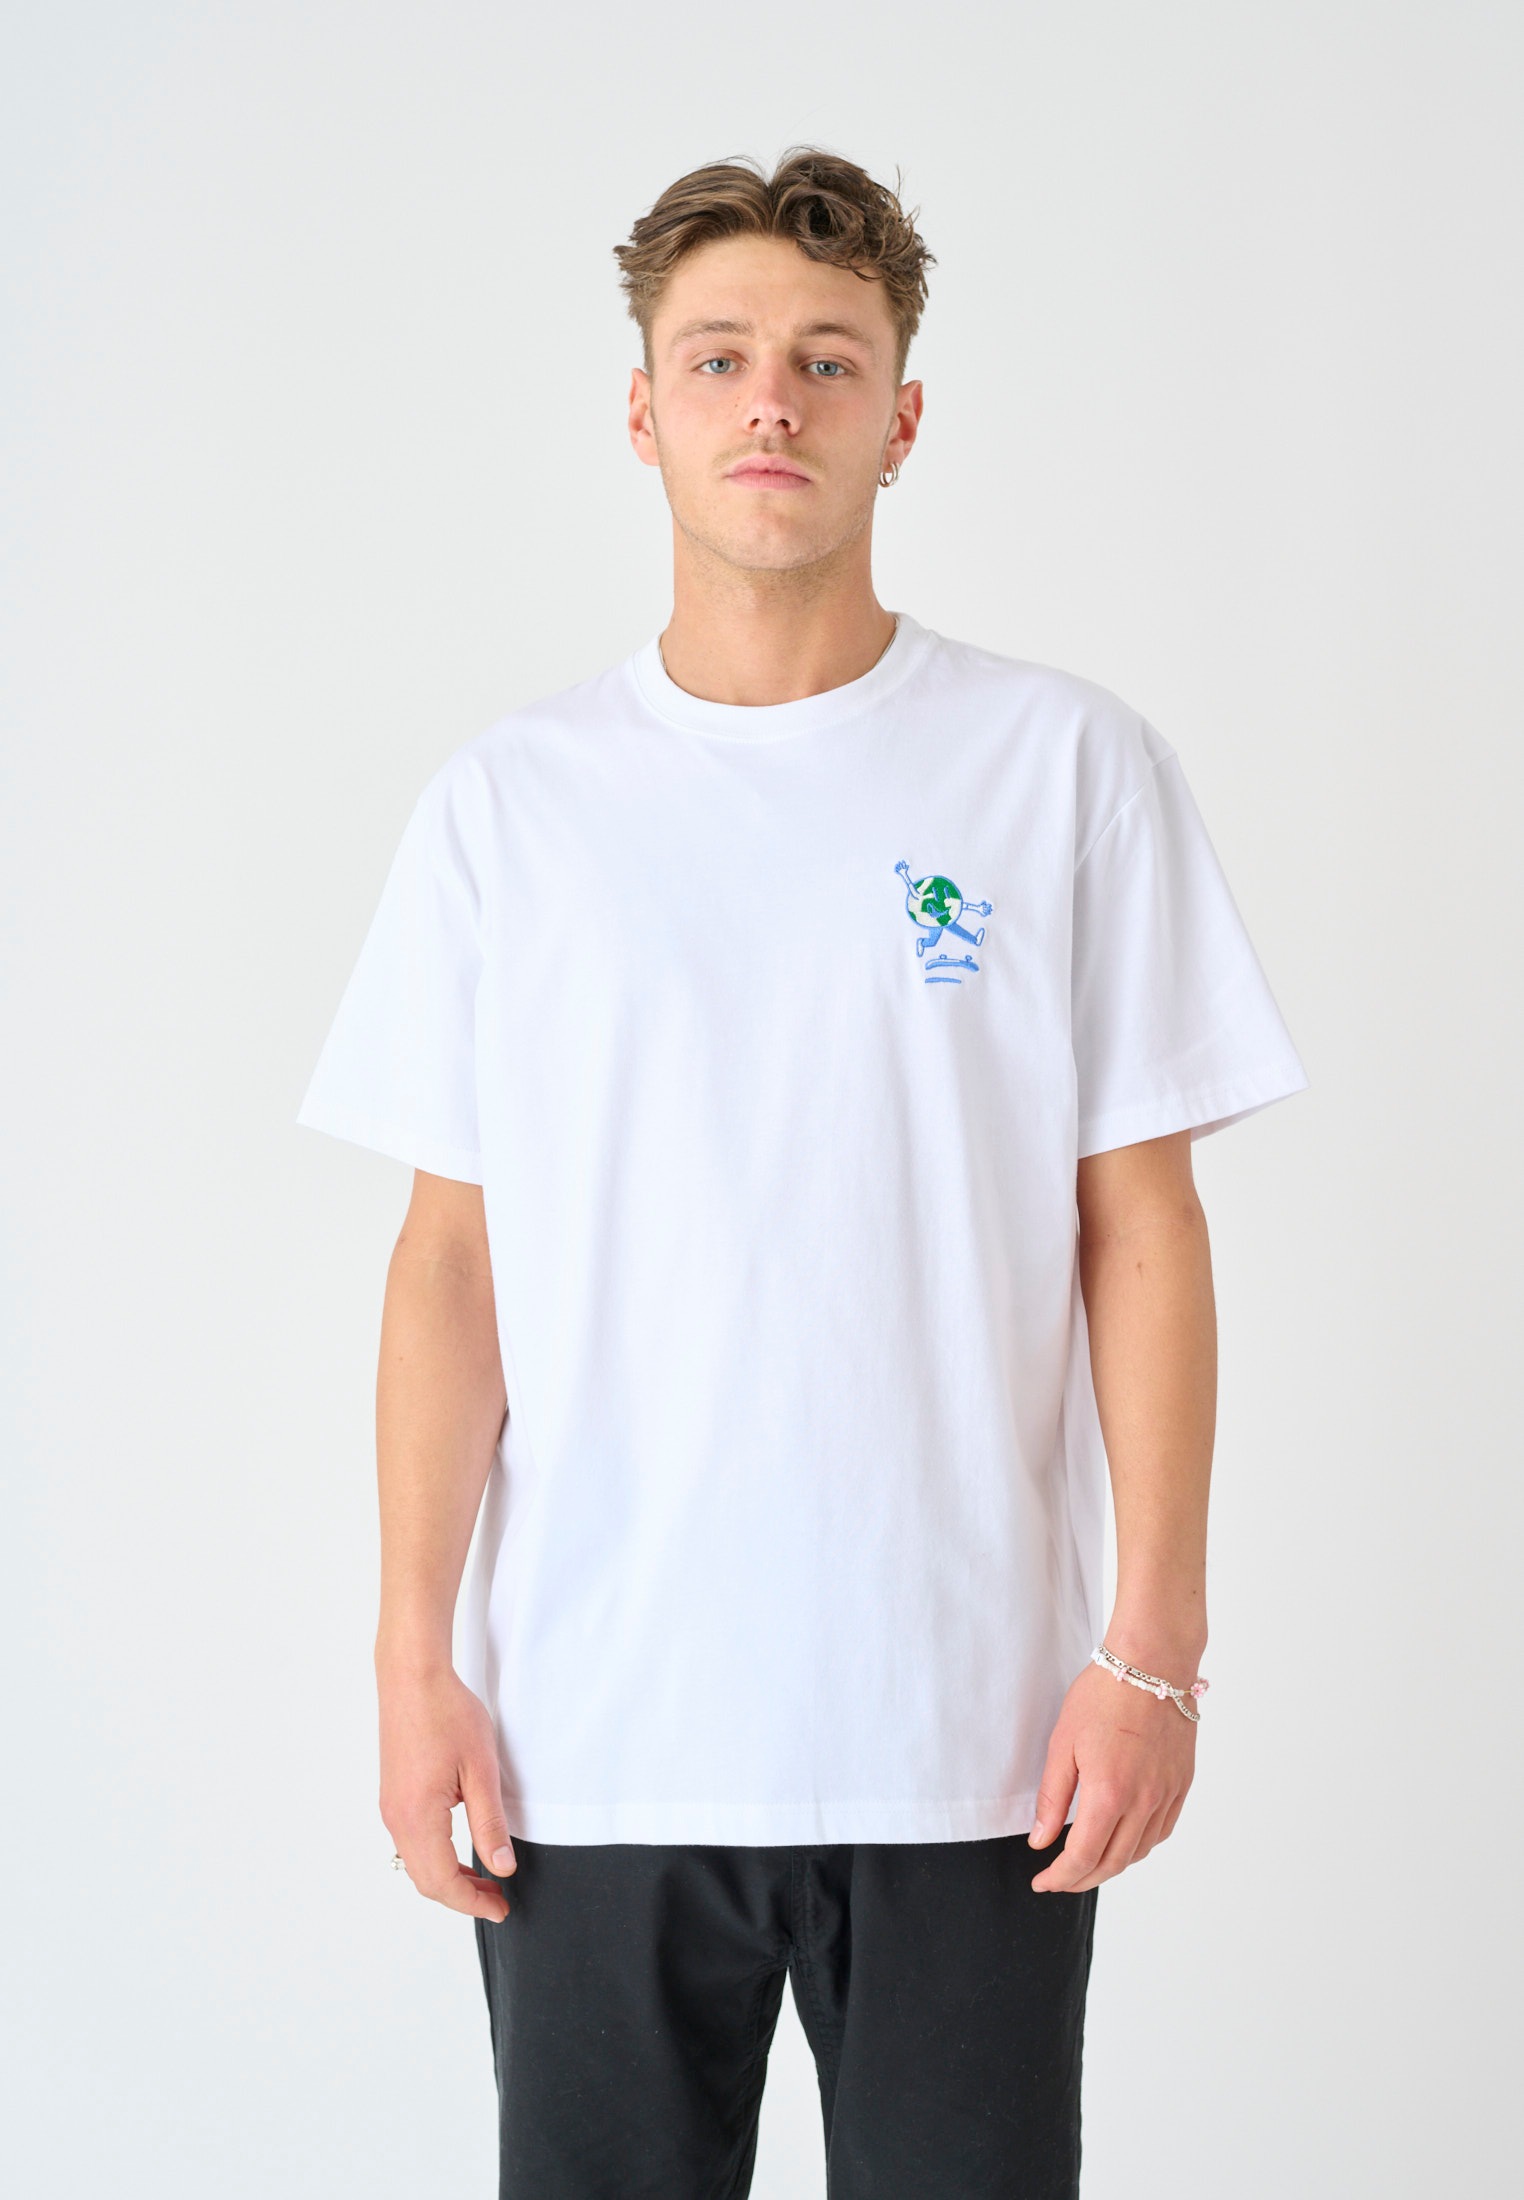 cleptomanicx -  T-Shirt "World is flipping", Mit Stickerei auf der Brust